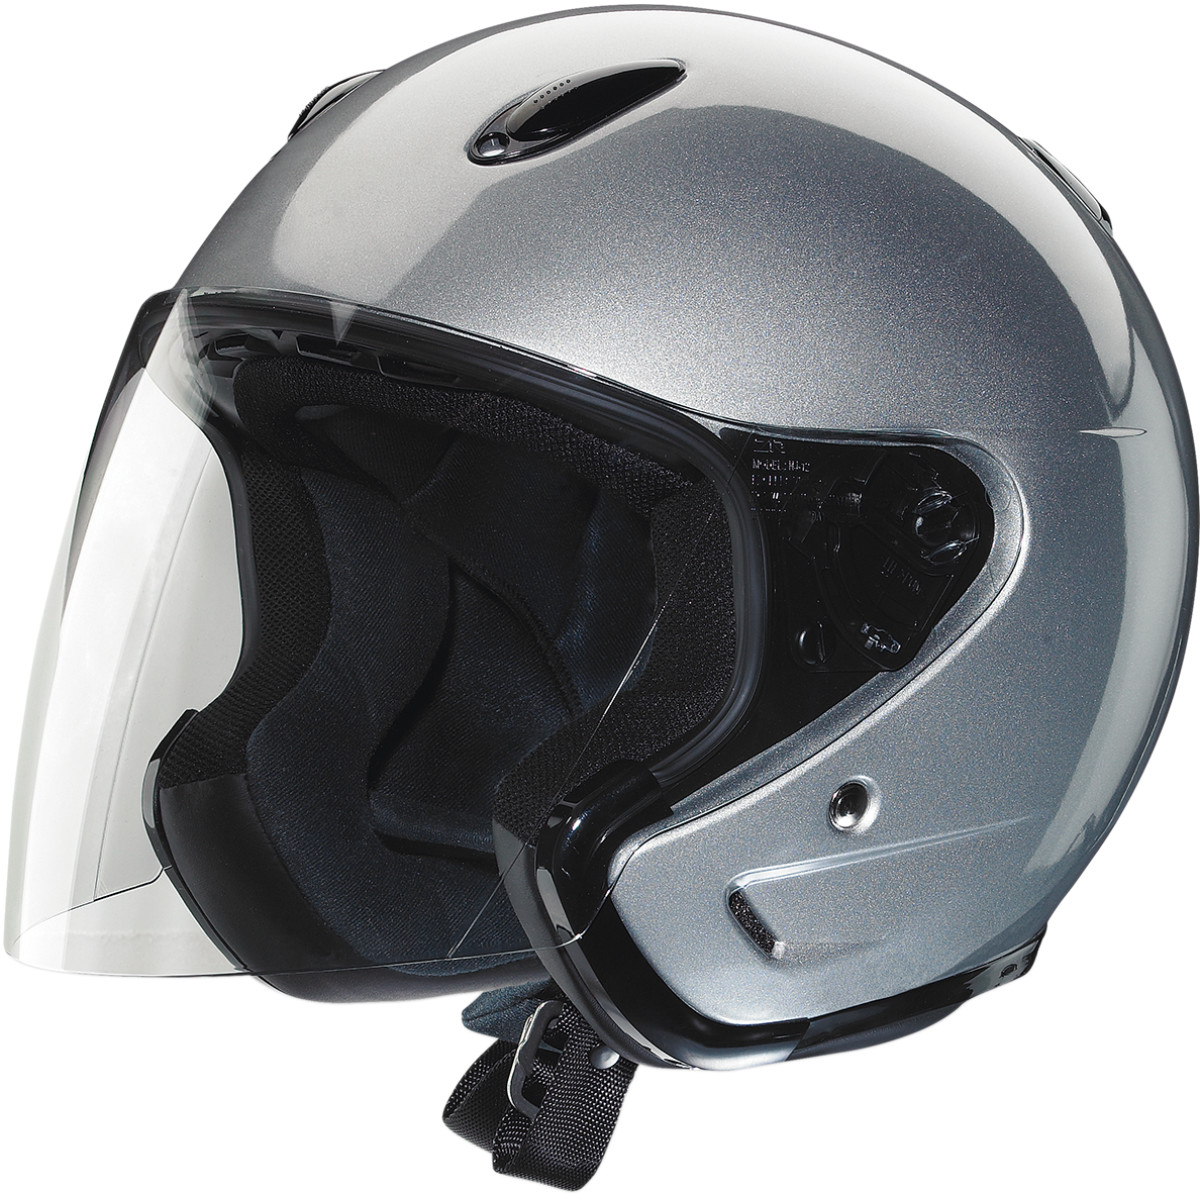 Z1R Ace Motorcycle Helmet Silver | eBay